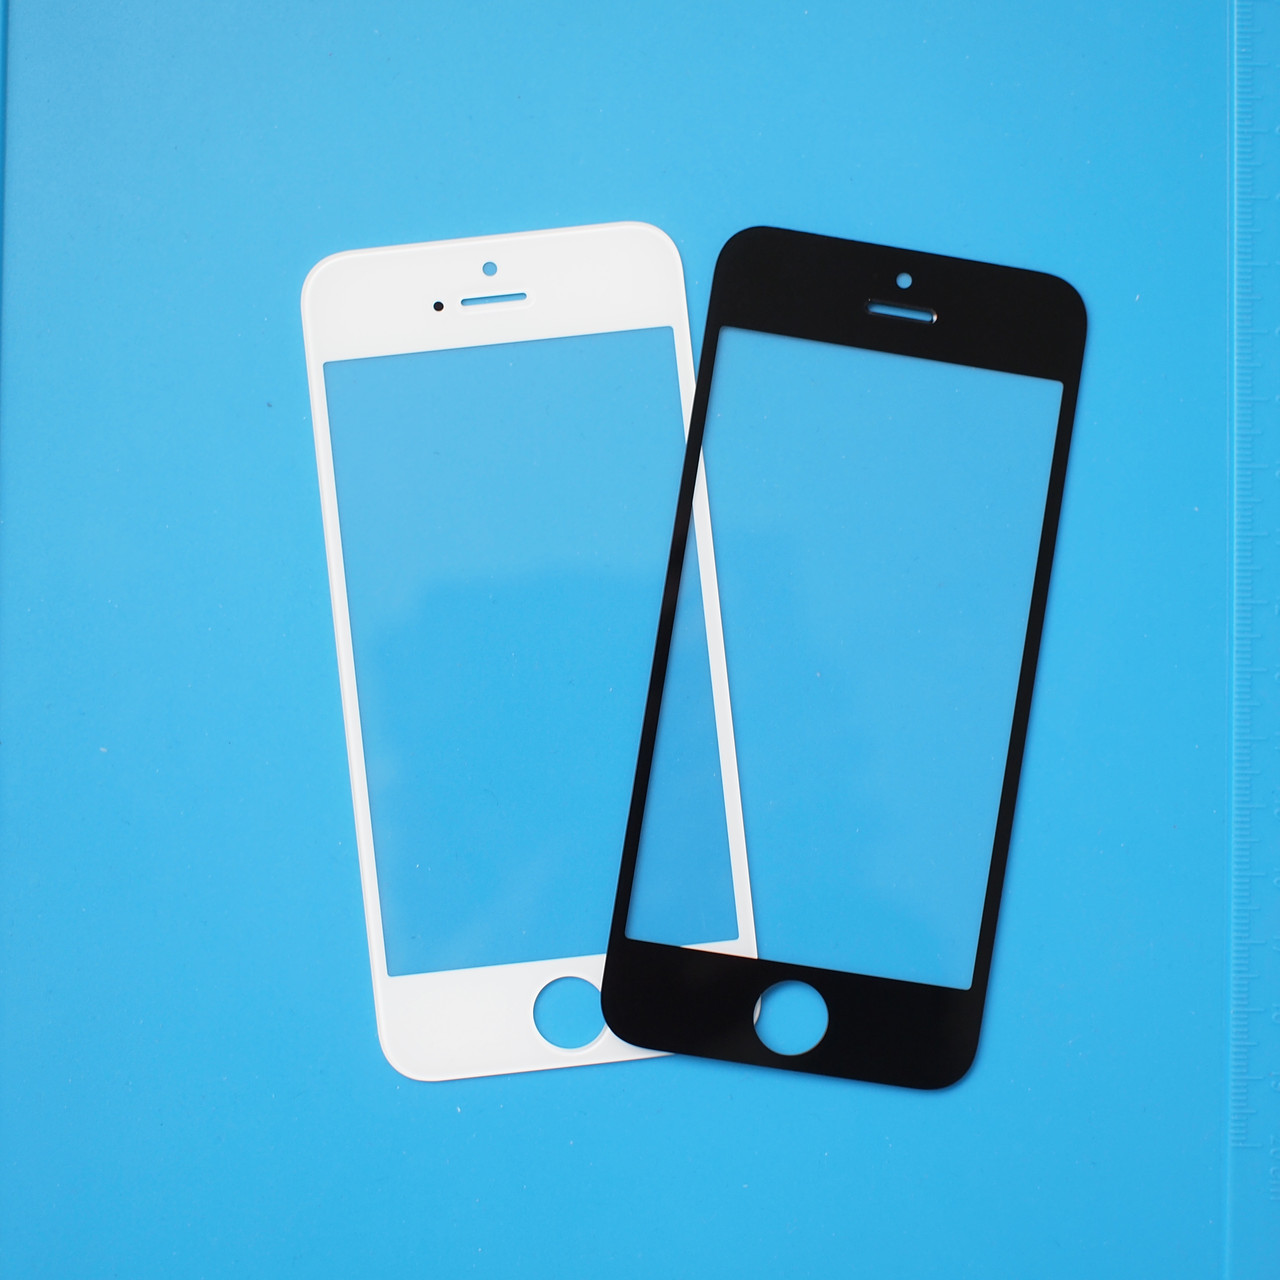 Apple iPhone 5, 5s - Замена стекла экрана, фото 1